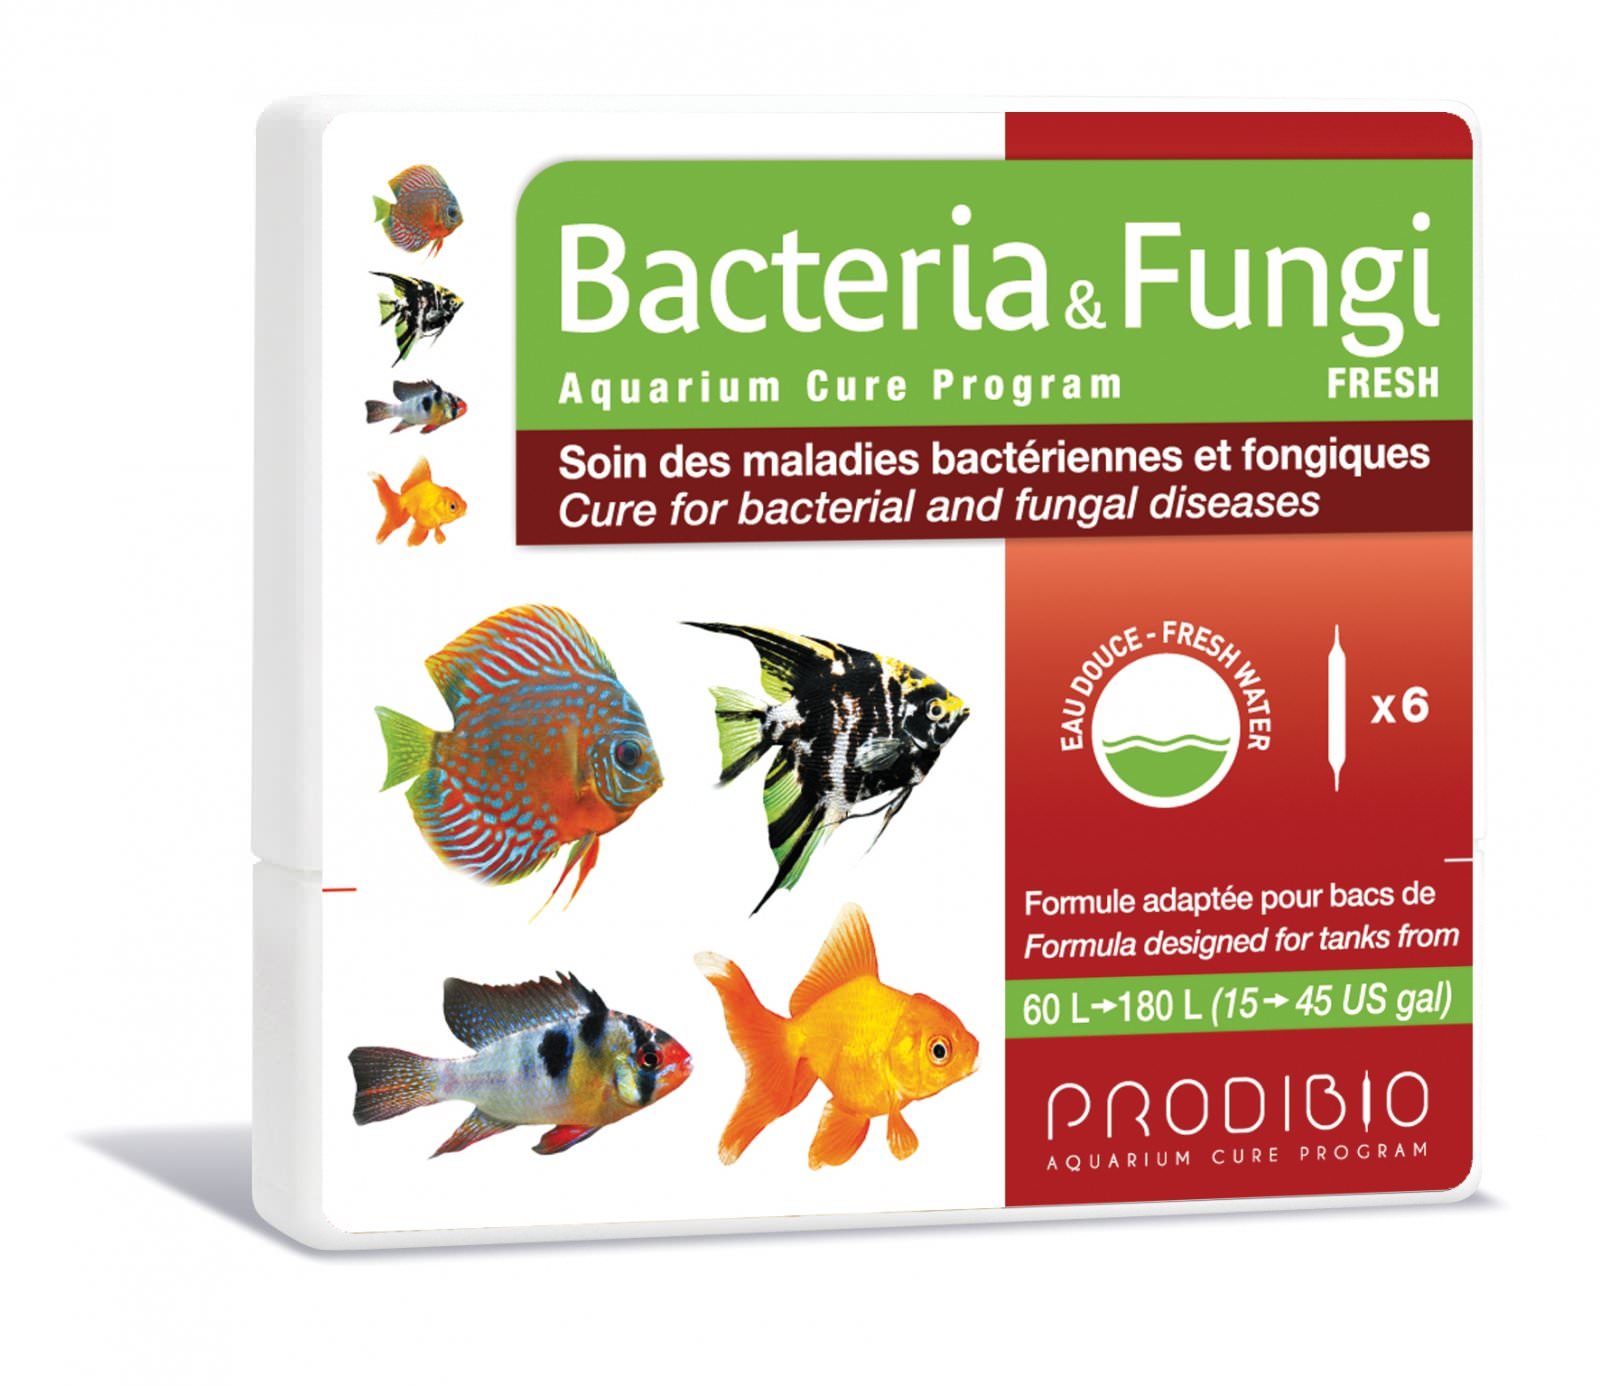 PRODIBIO Bacteria & Fungi Fresh 6 ampoules soins des maladies bactériennes et fongiques pouvant contaminer des poissons deau douce